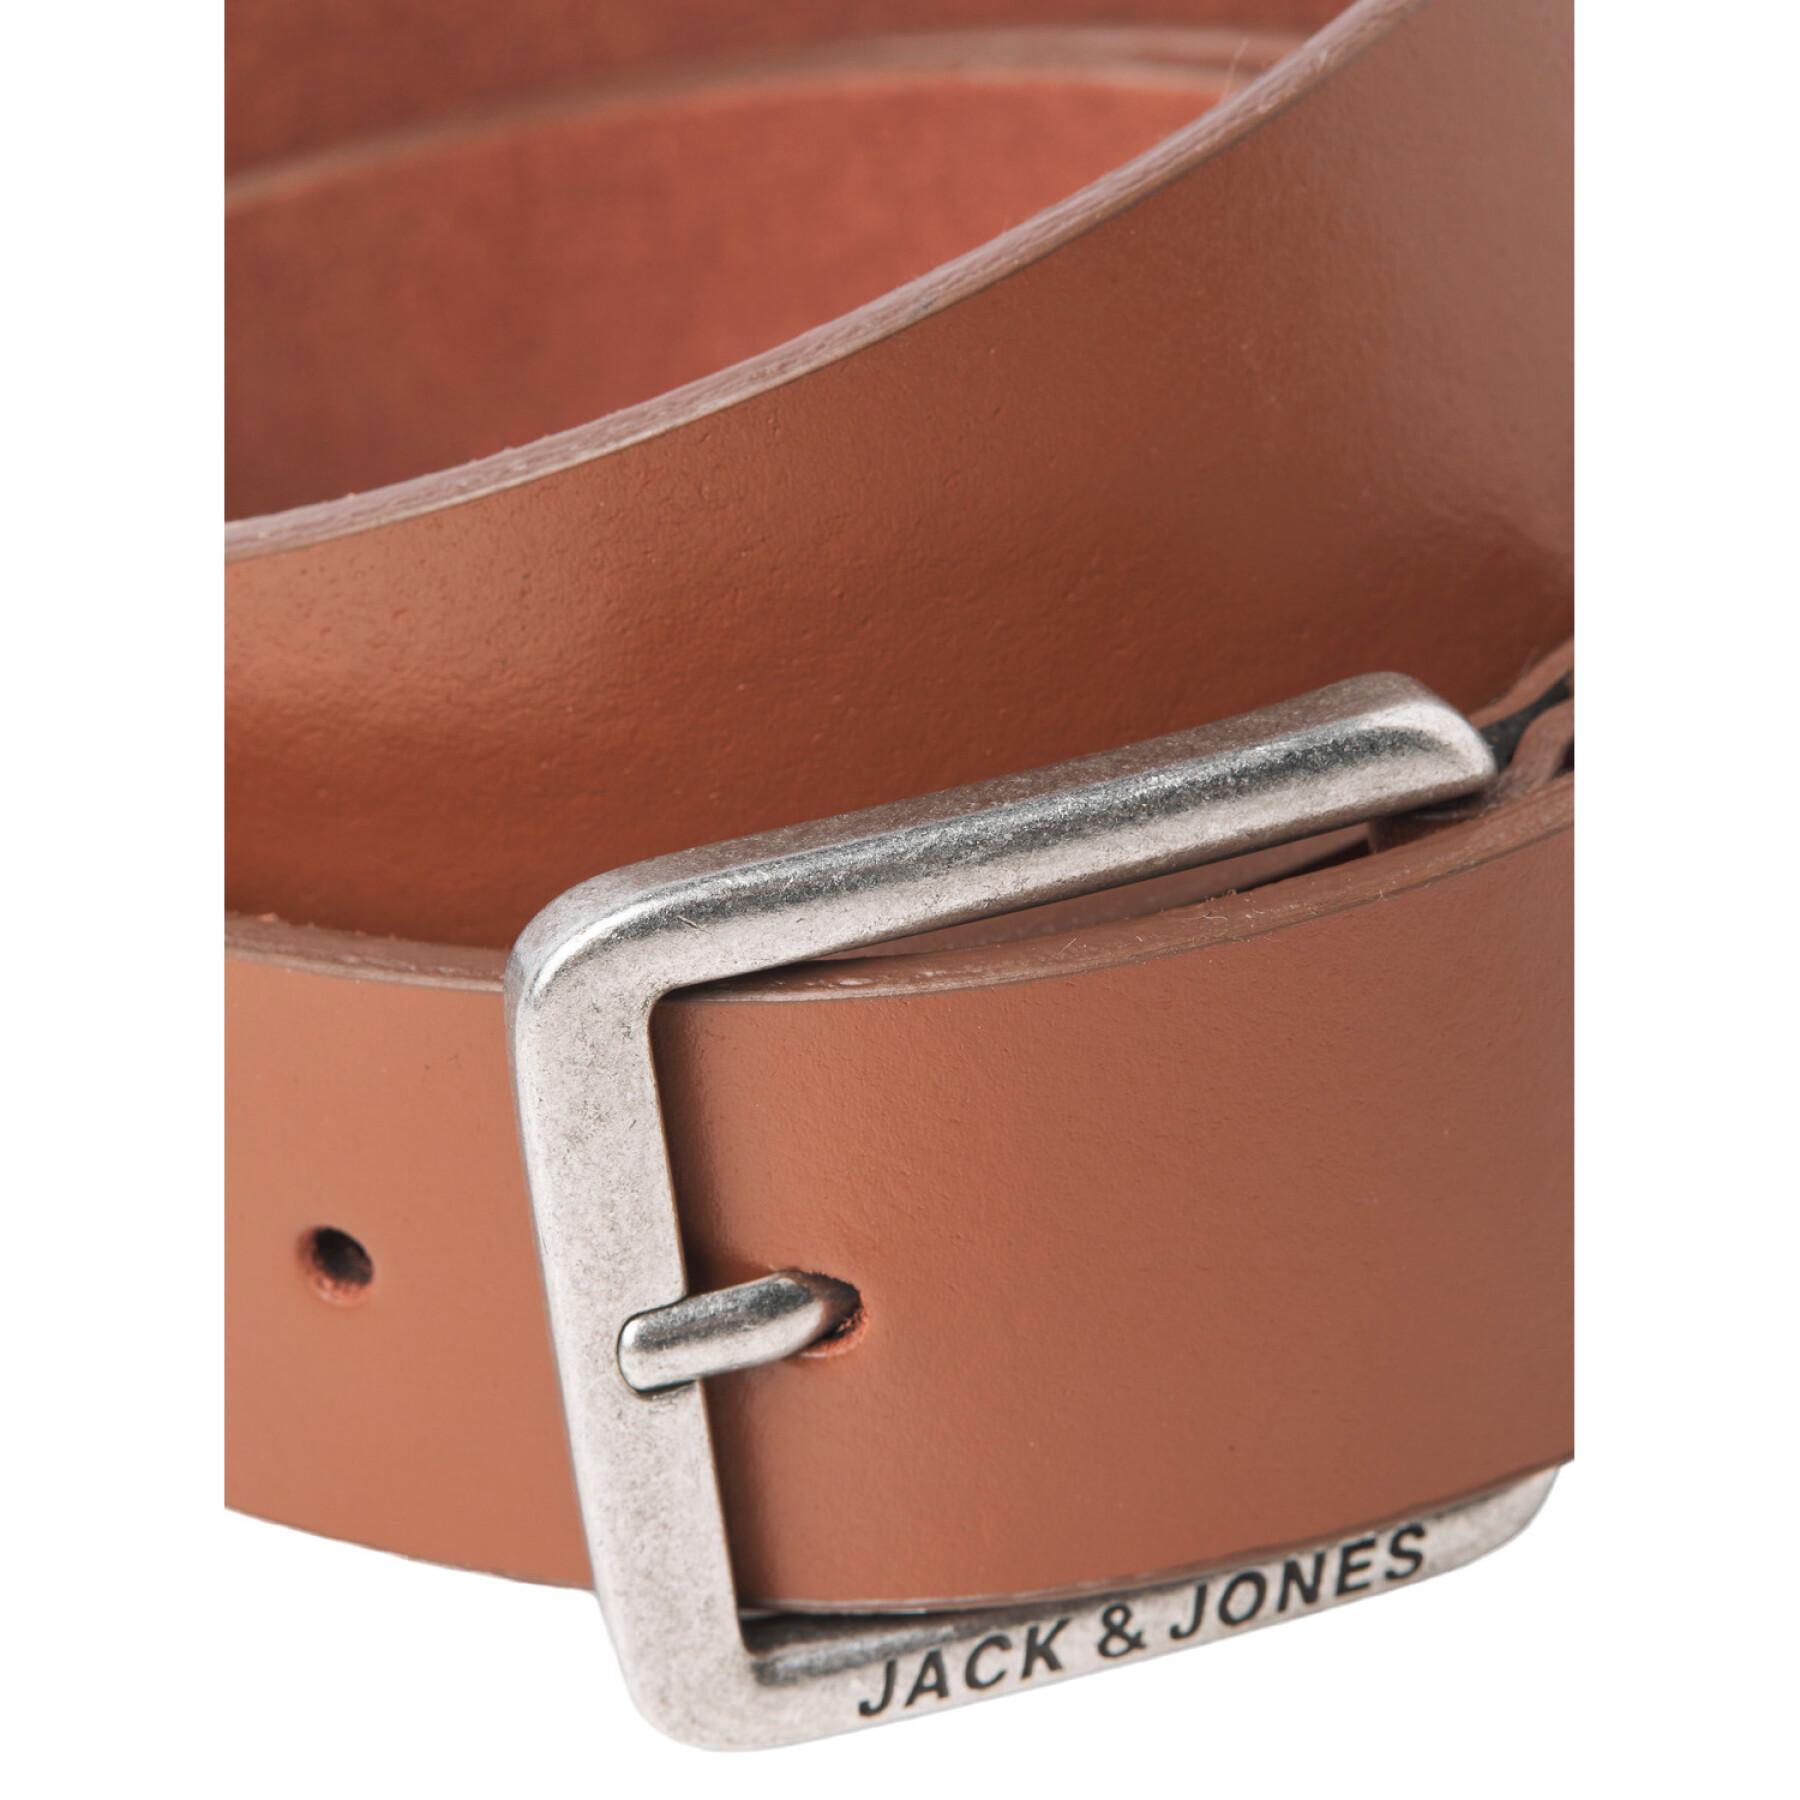 Cintura Jack & Jones Jacespo